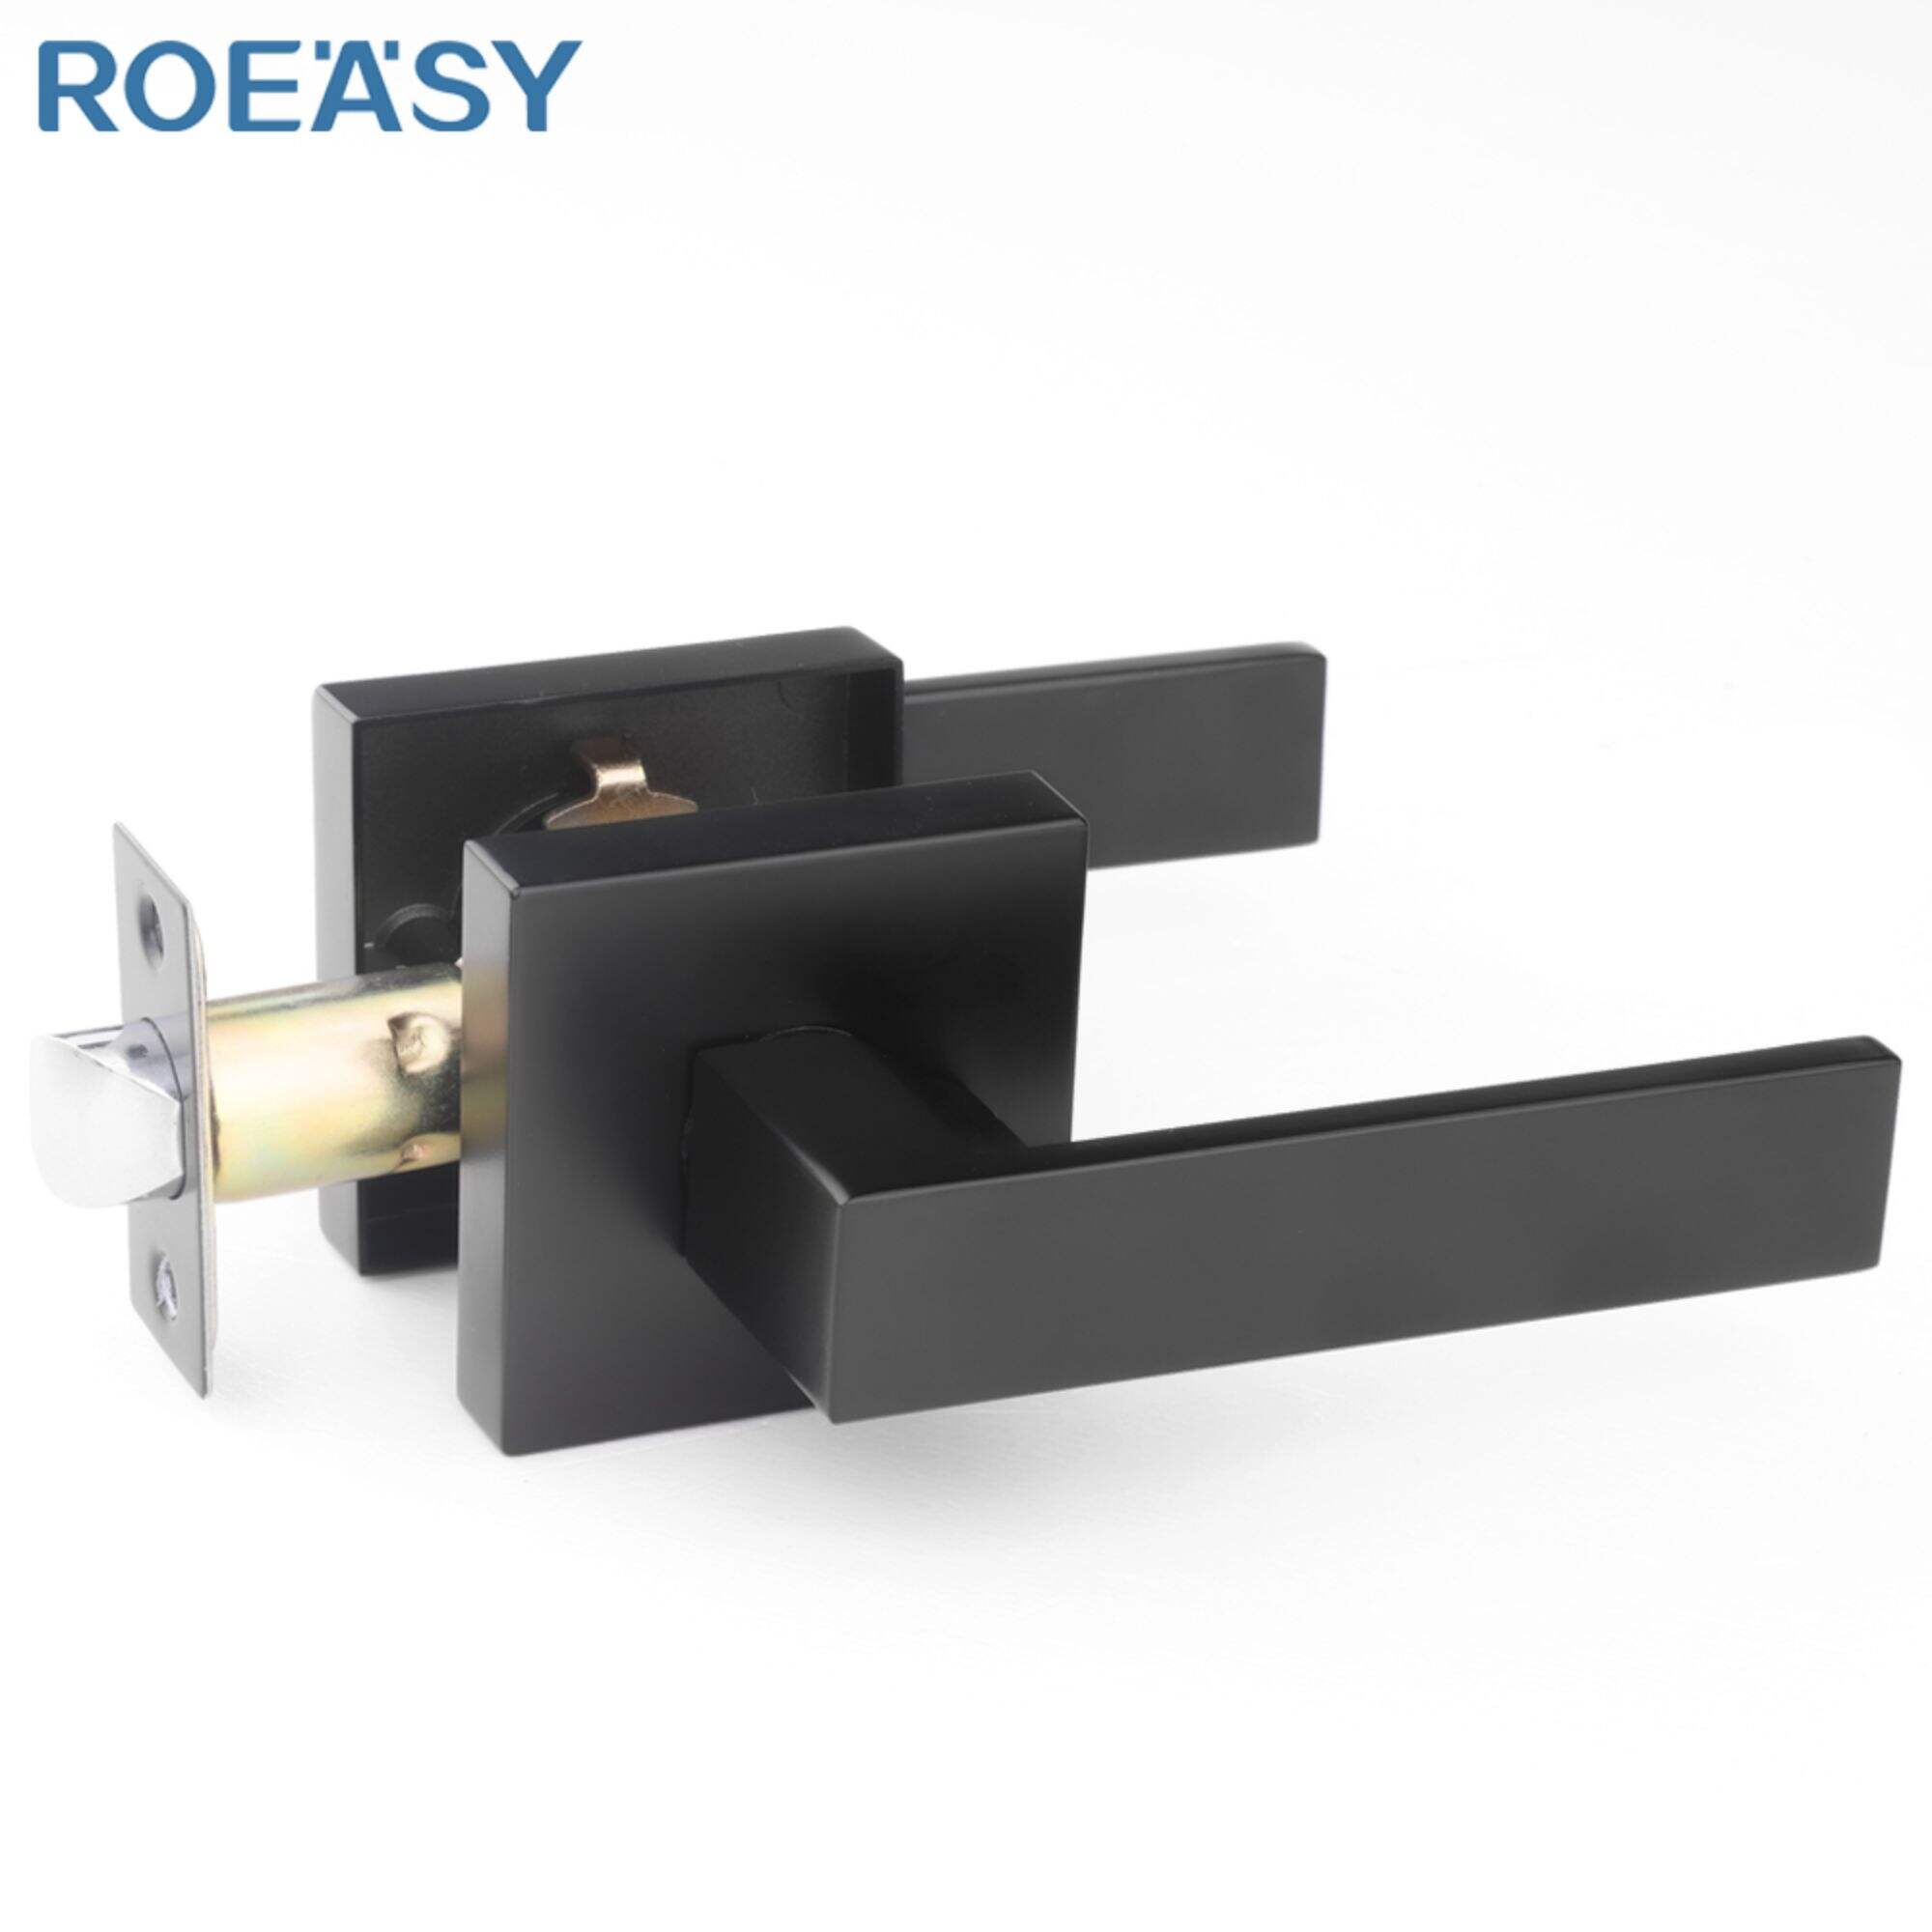 Roeasy 6271BN-PS passage privacy bathroom door lever lock set door locks online for doors